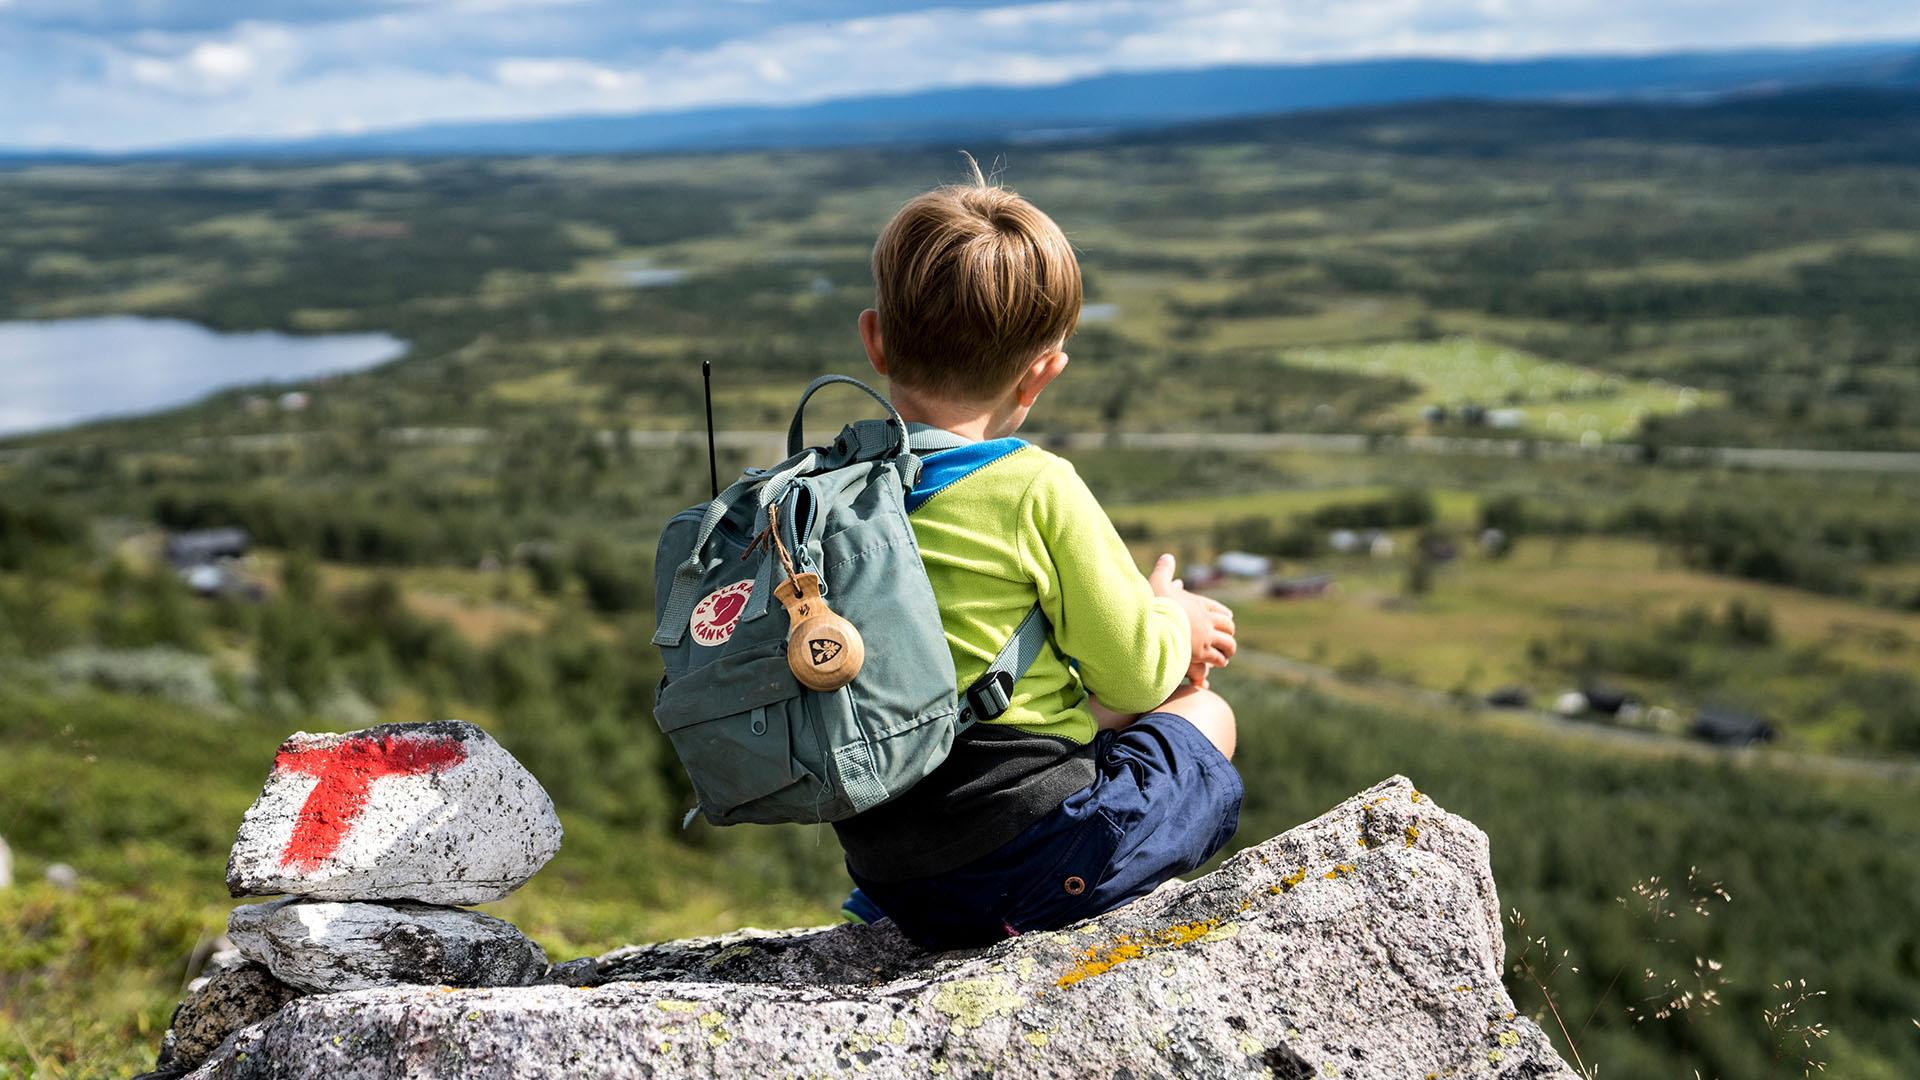 Ein Junge mit einem kleinen Rucksack sitzt auf einem Stein, der eine Wanderwegmarkierung trägt, und schaut über eine große Ebene mit einem See und Almen.